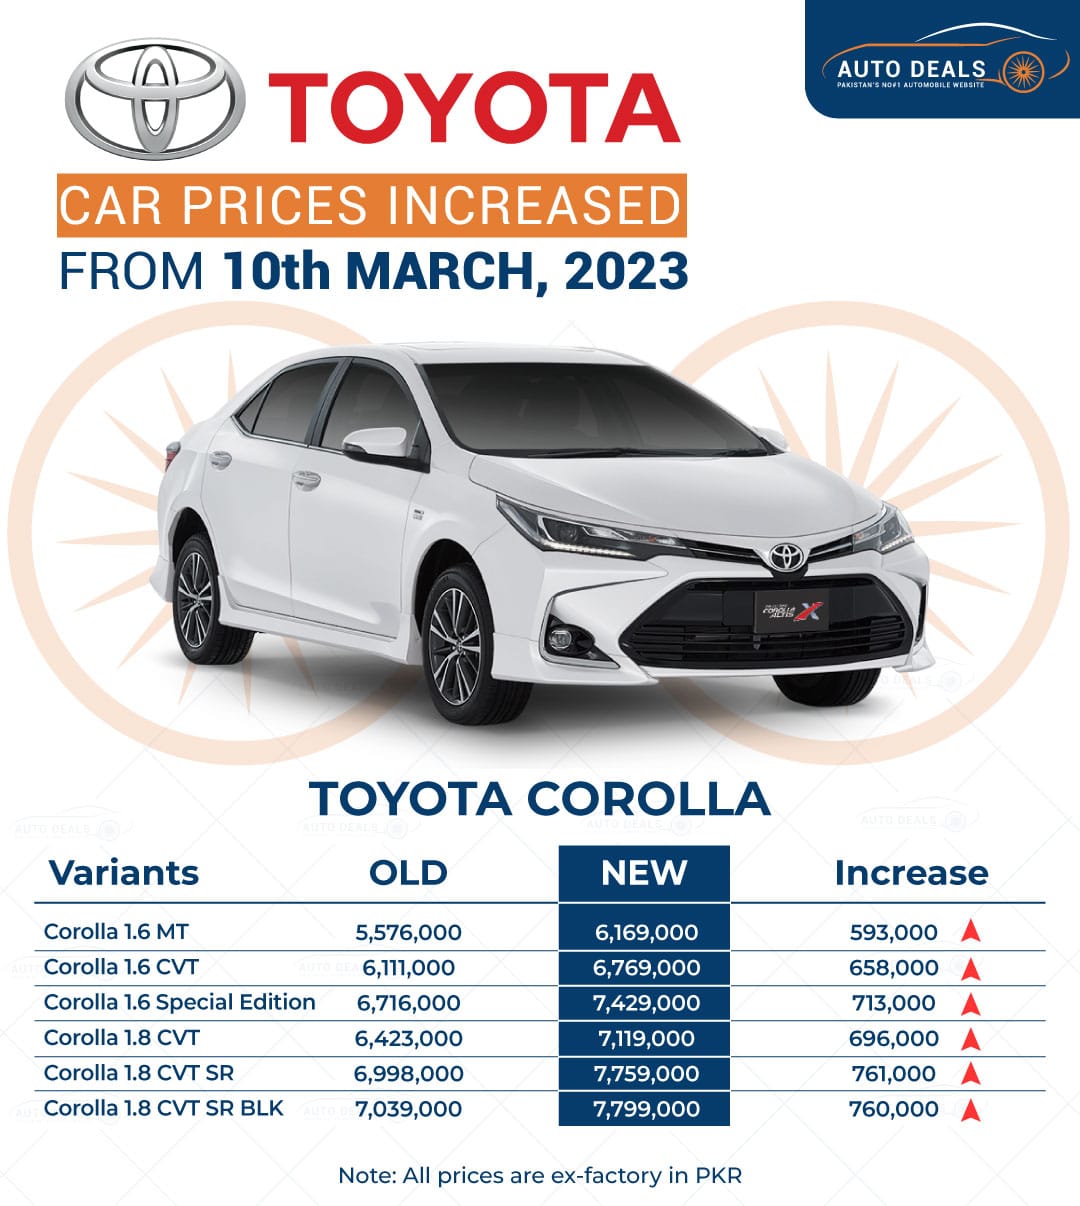 Toyota Corolla Price Increased